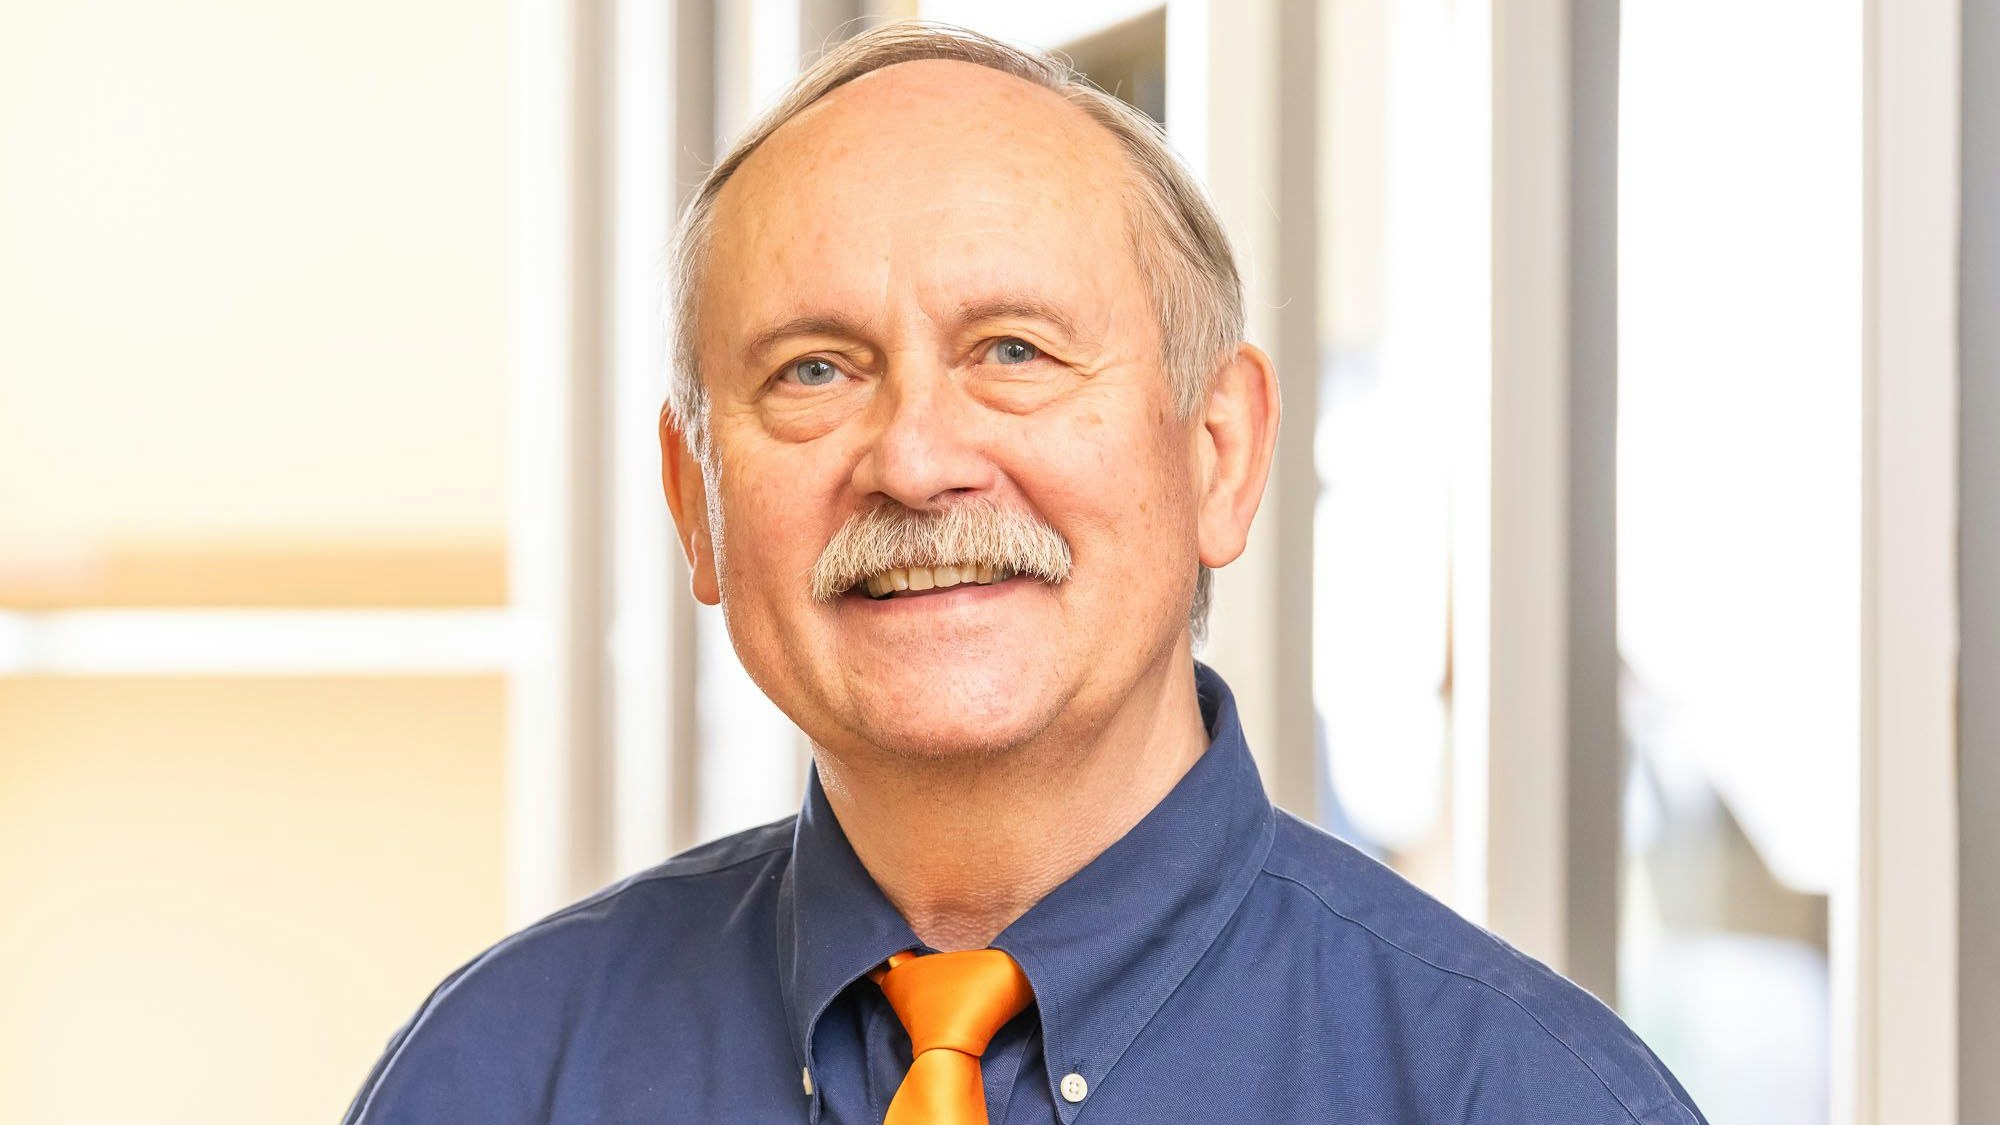 Norbert Mülleneisen, Facharzt für Lungen- und Bronchialheilkunde und Gründer des Asthma- und Allergiezentrums Leverkusen ist im Porträt zu sehen.